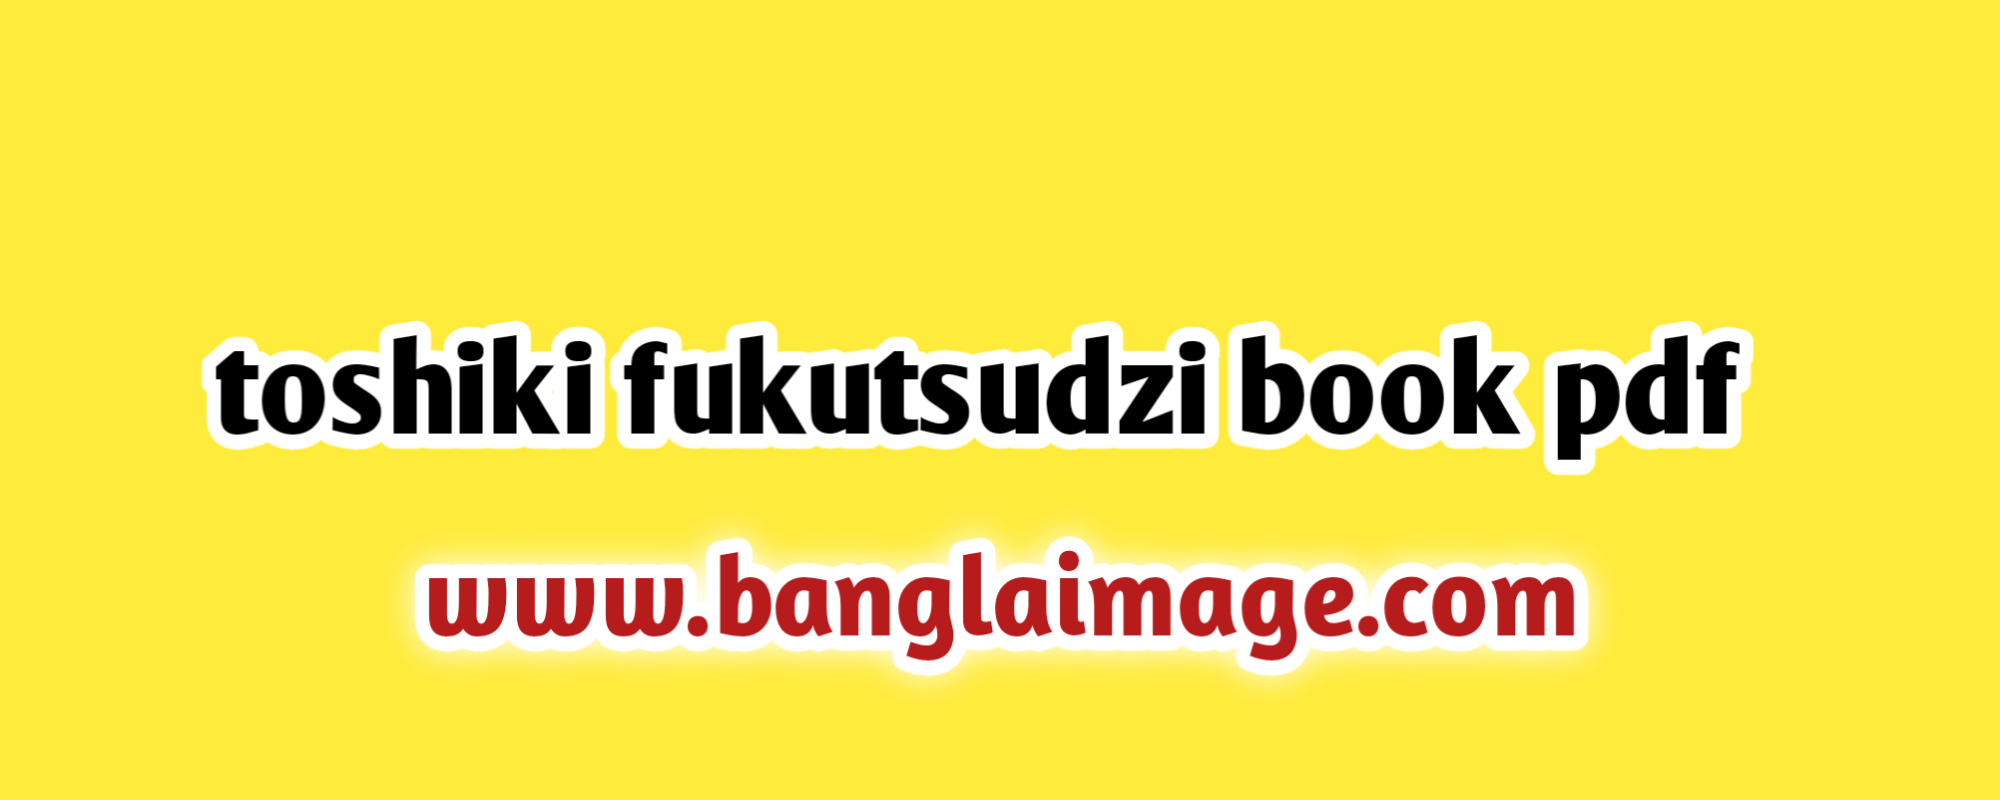 toshiki fukutsudzi book pdf, toshiki fukutsudzi book pdf download , toshiki fukutsudzi, toshiki fukutsuji book in english